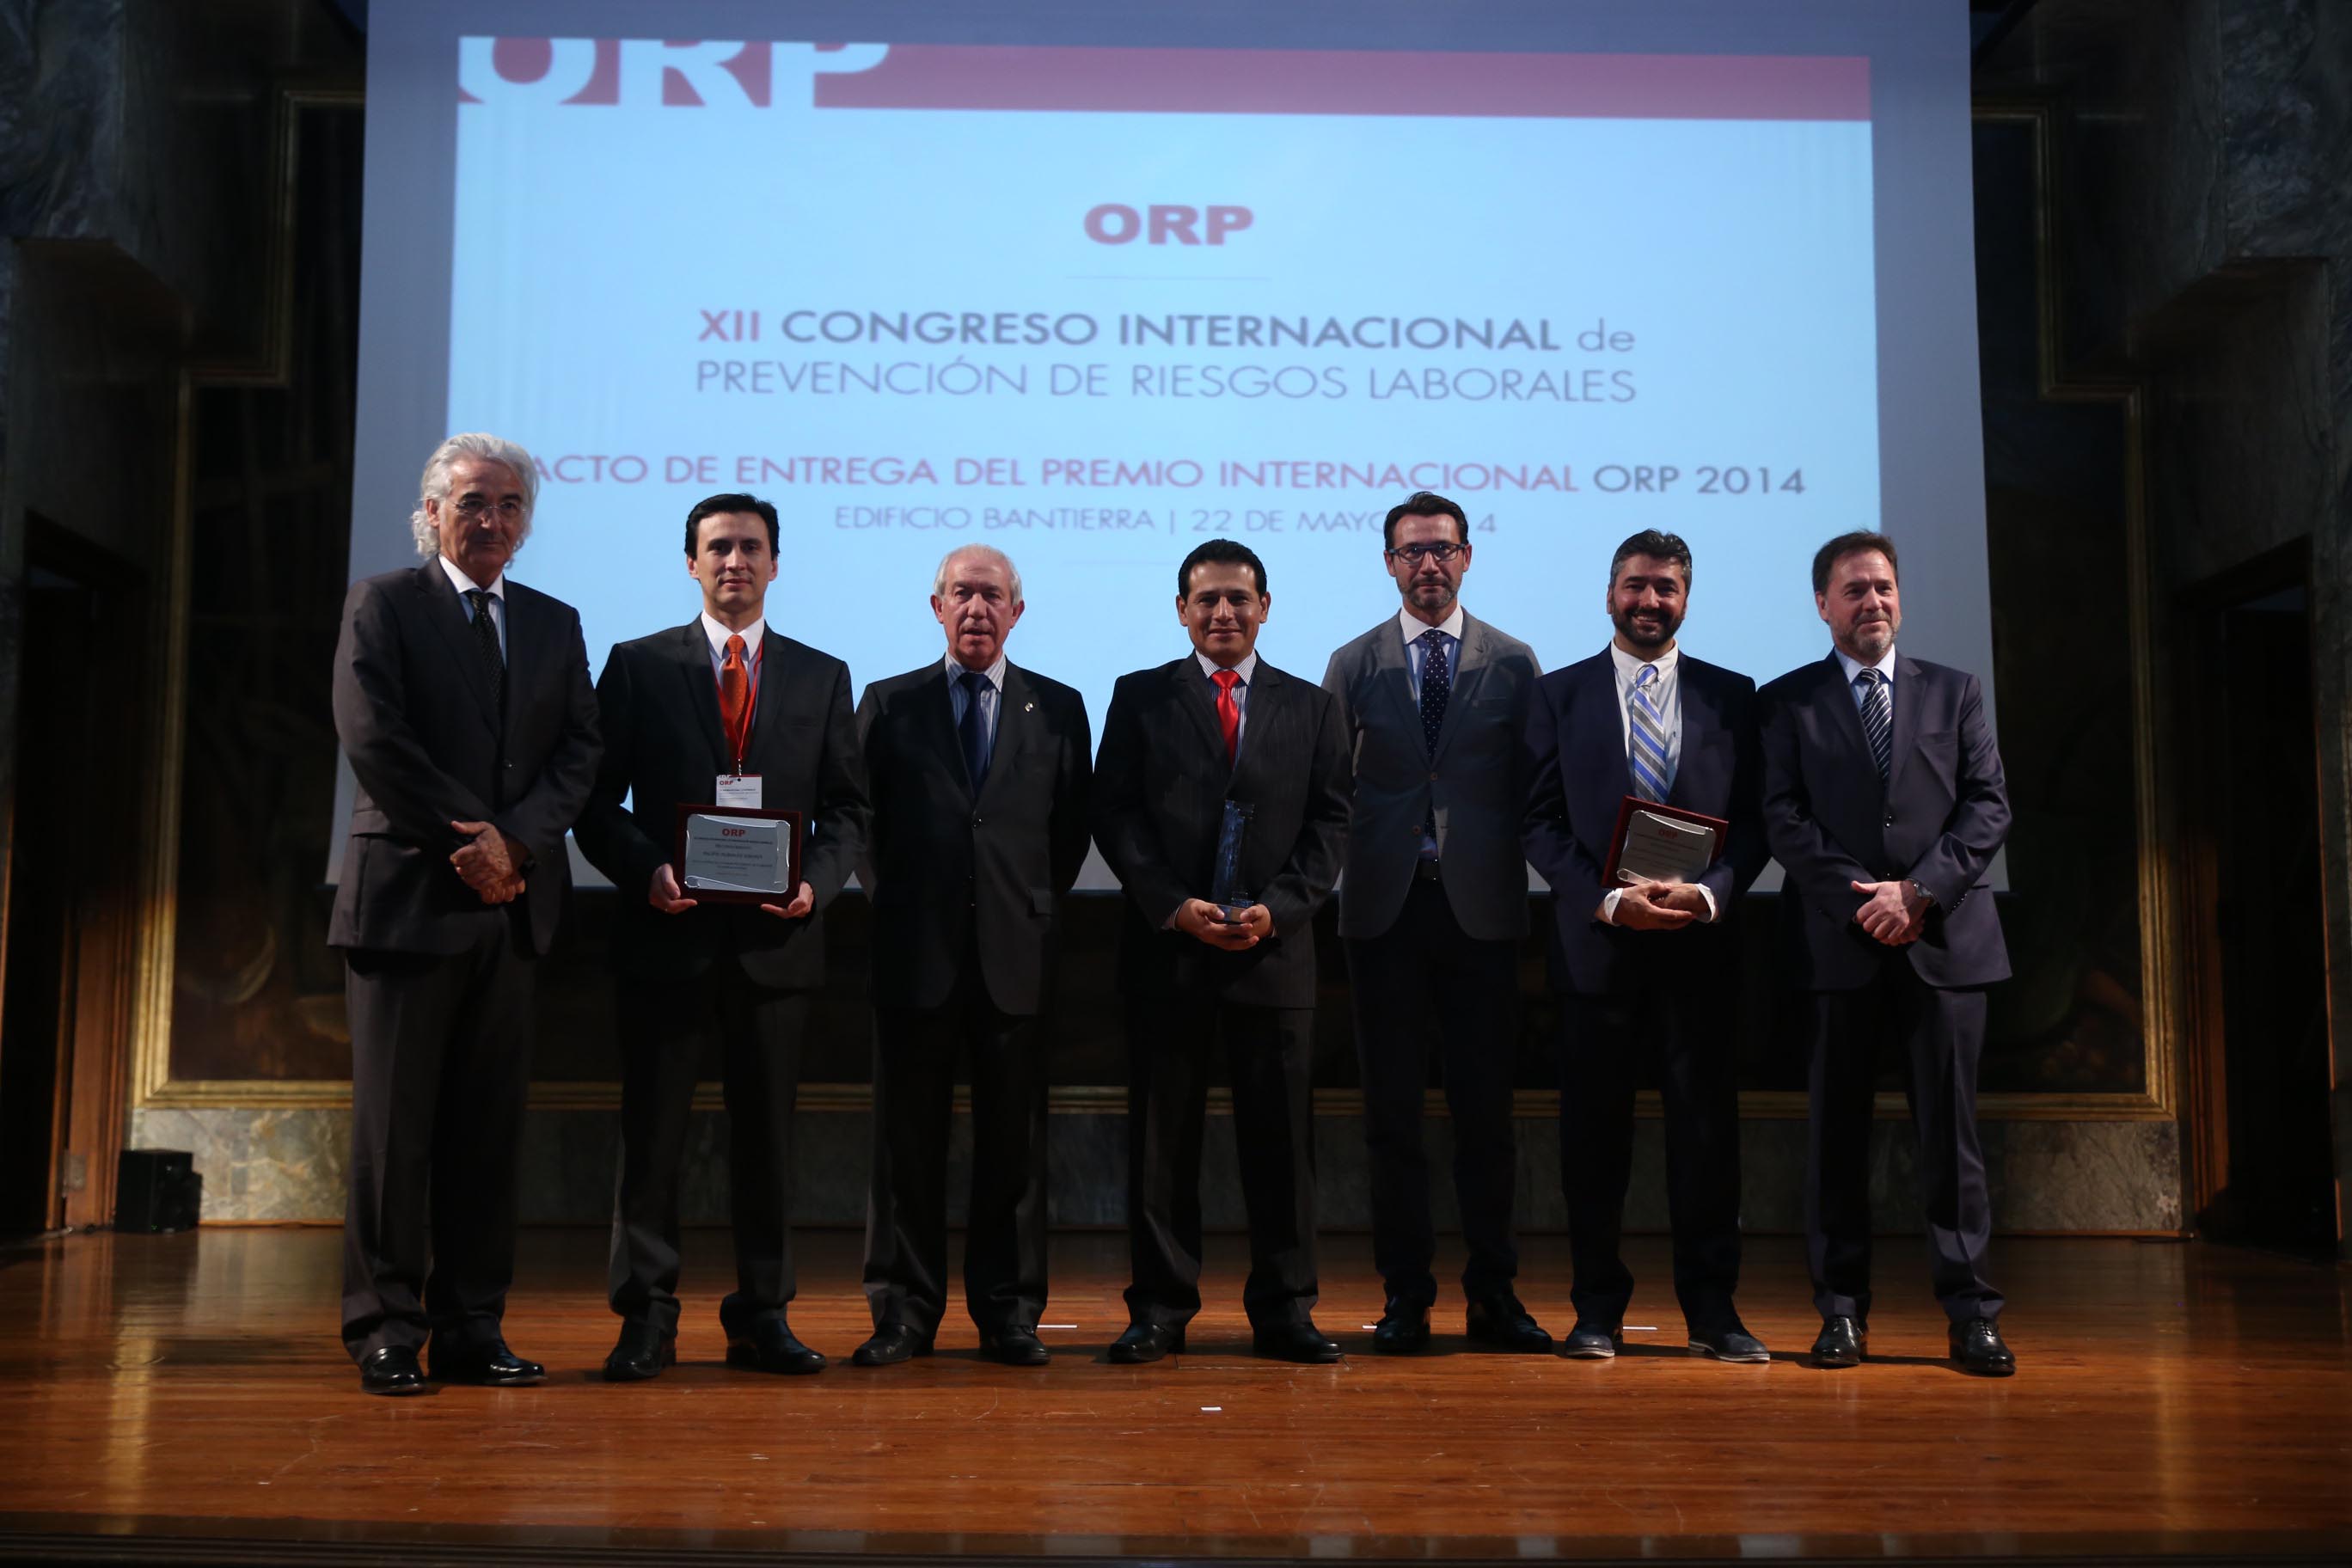 La compañía peruana RIMAC Seguros, premio internacional ORP